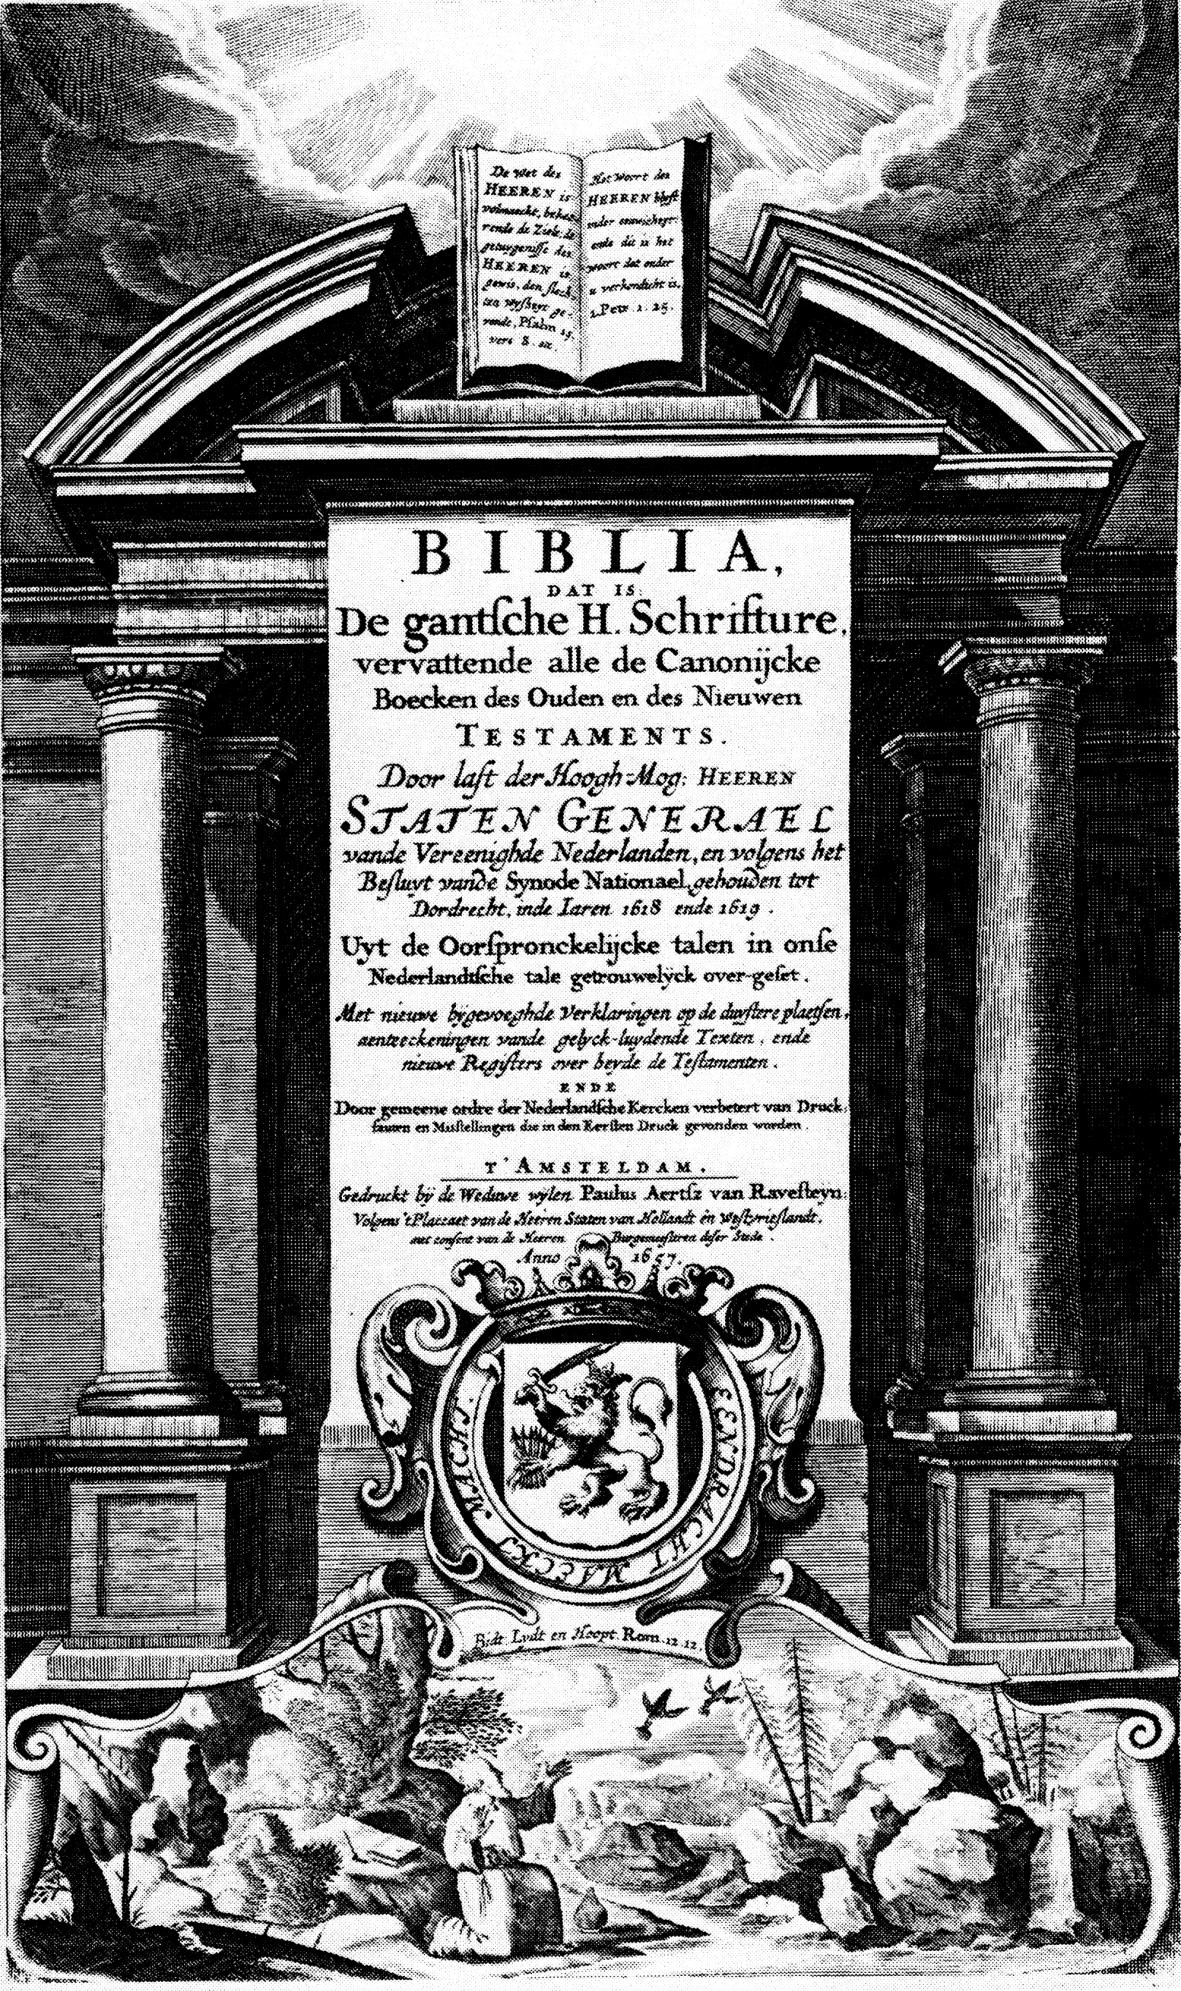 17 Statenbijbel, tweede Corrigeerbijbel, verschenen in 1657 bij de Weduwe van Ravesteyn.